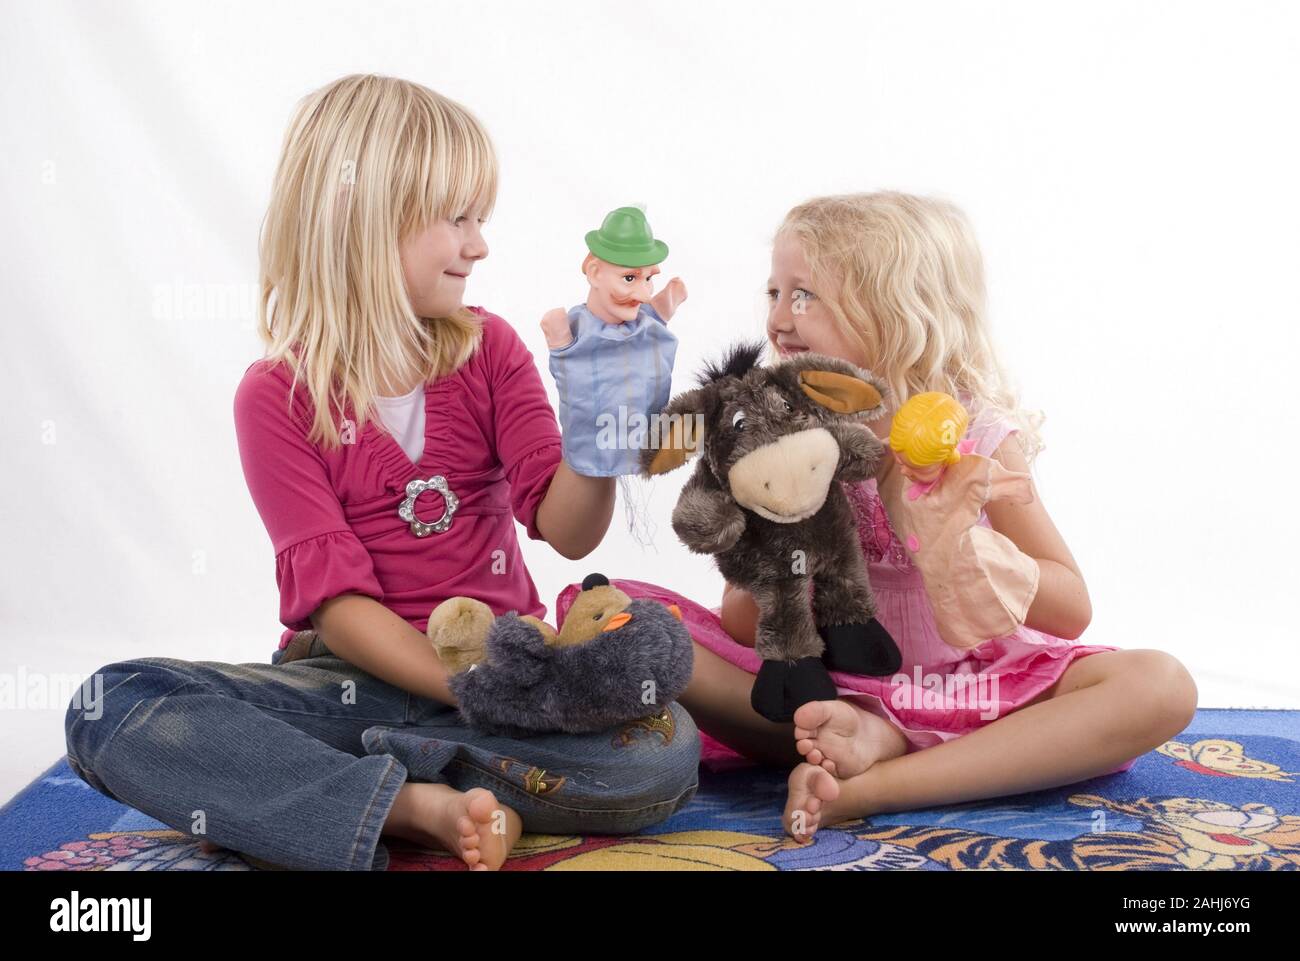 Zwei rubia Mädchen, 6 und 7 Jahre alt, spielen mit Handpuppen, Kasperle, figuren, Teatro, Freunde, Geschwister, Kasperletheater, señor:Yes Foto de stock